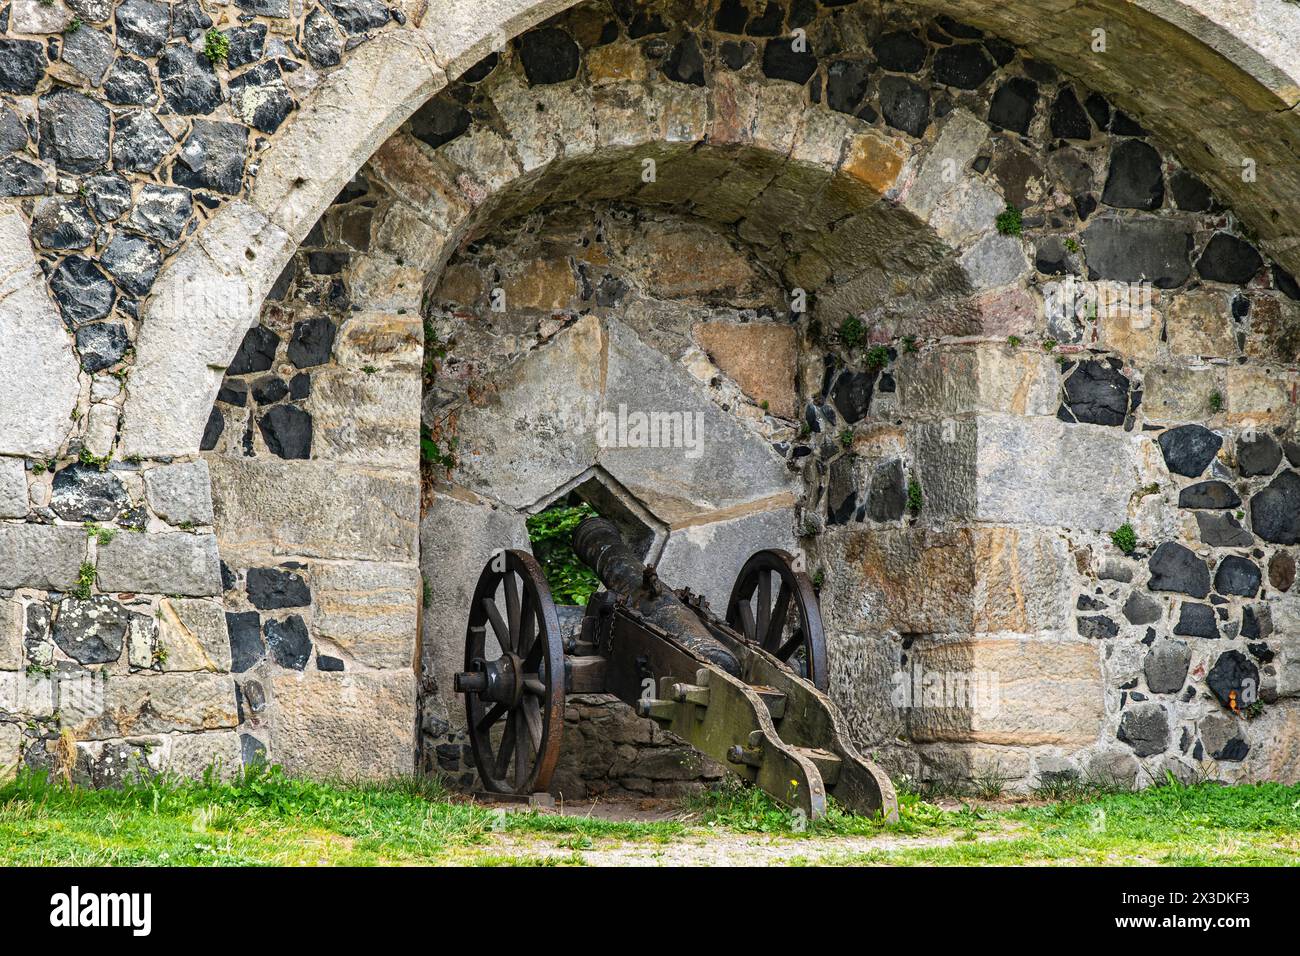 Historische Artillerie an der Festungsmauer der Burg Stolpen auf dem Basaltberg von Stolpen, Sachsen, Deutschland, nur zur redaktionellen Verwendung. Stockfoto